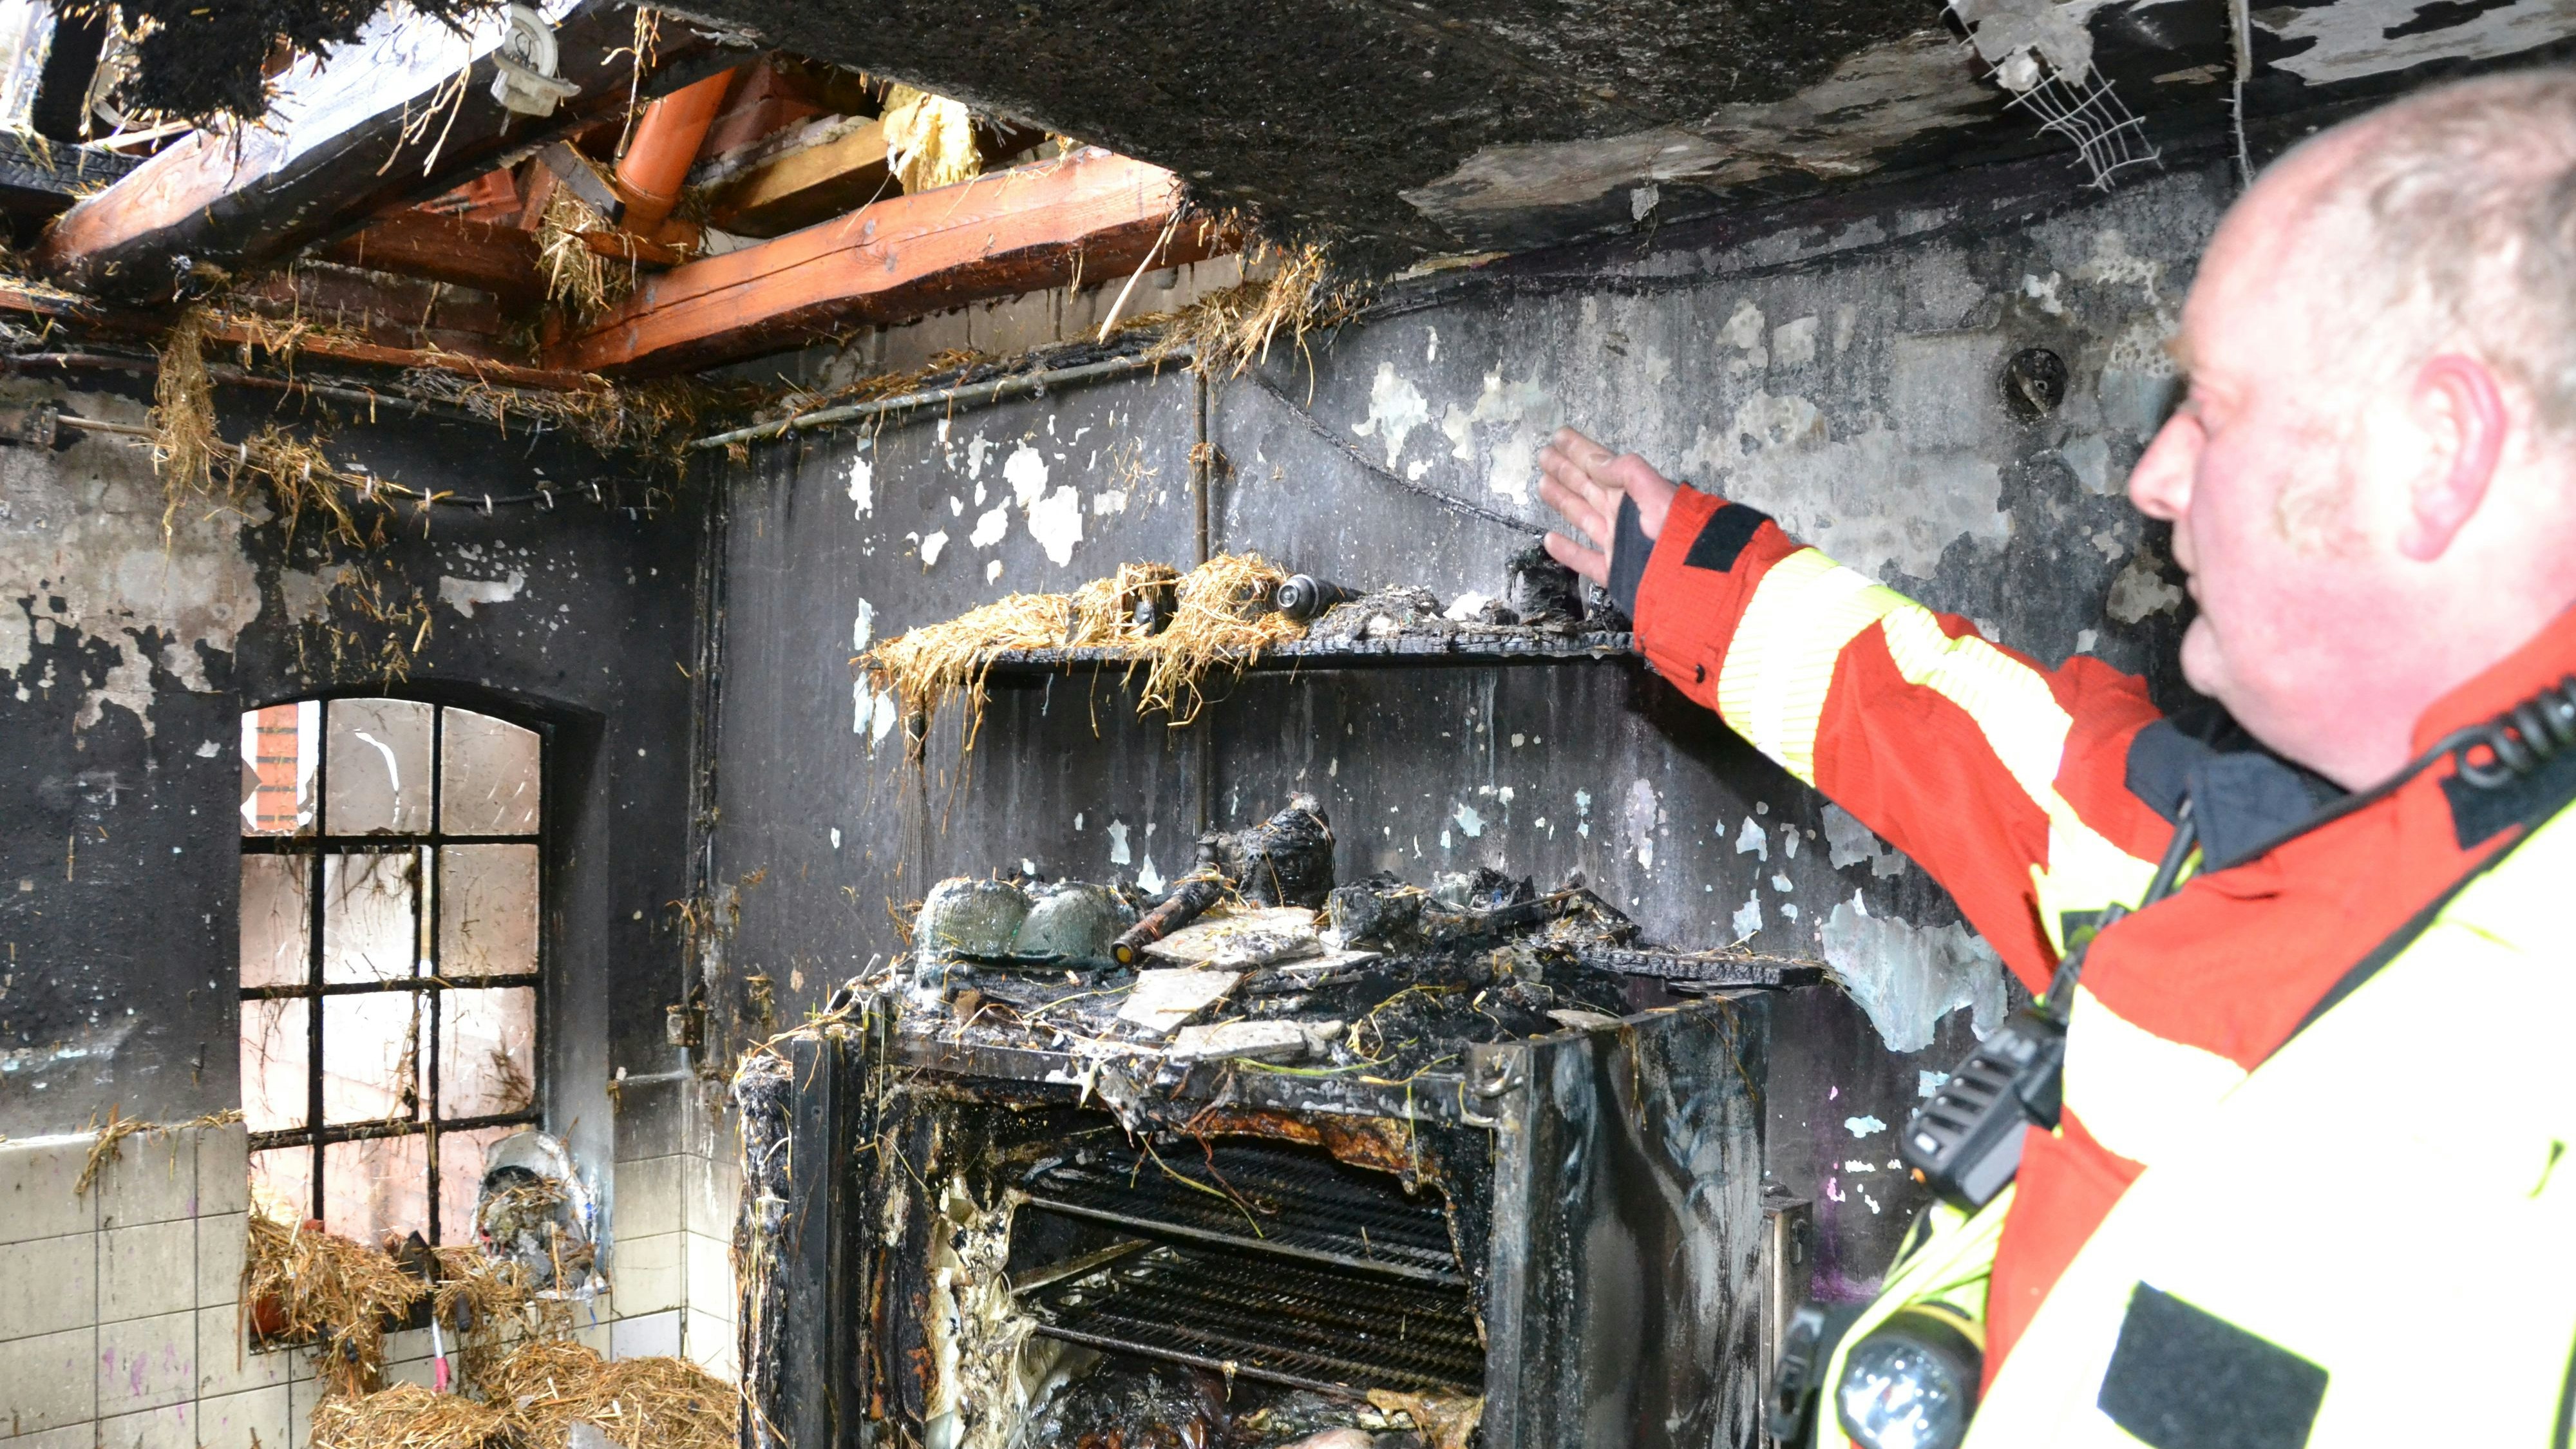 Schwer zerstört: Einsatzleiter Torsten Koopmeiners erklärt, wie es zu dem Brand kam. Foto: Meyer